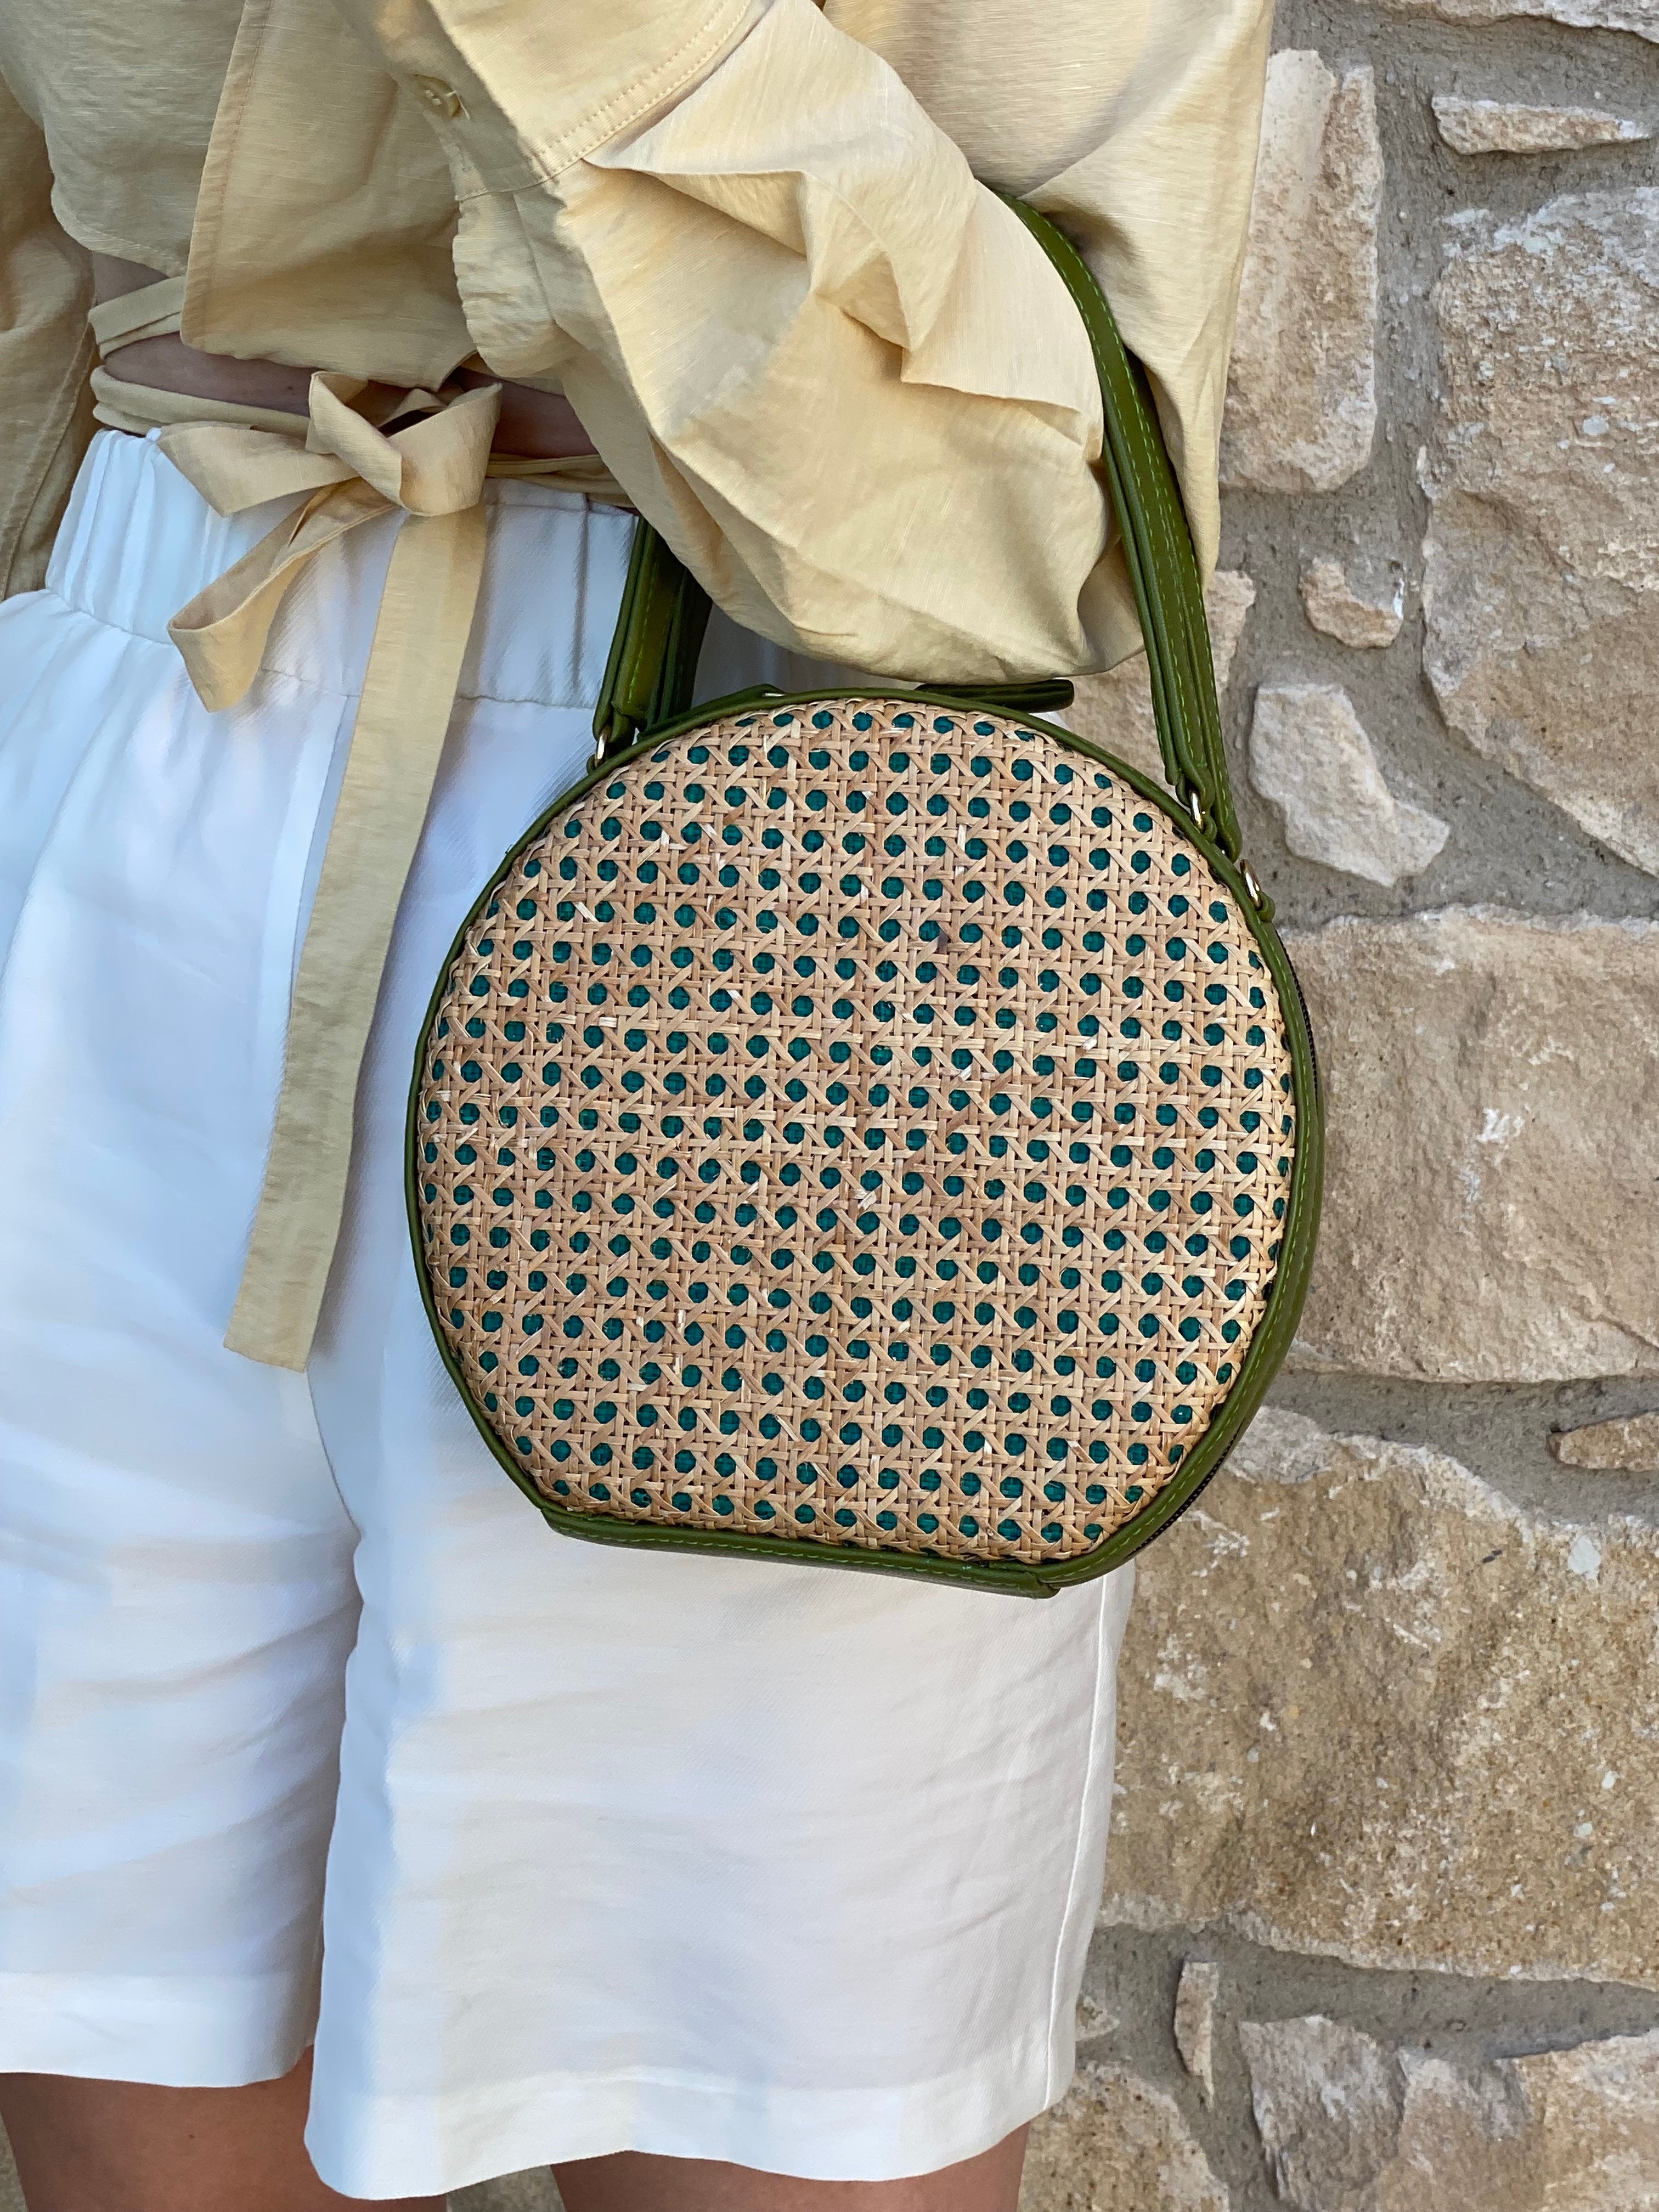 ILHA Francesca crossbody raffia bag, Olive, held by model against sandstone wall